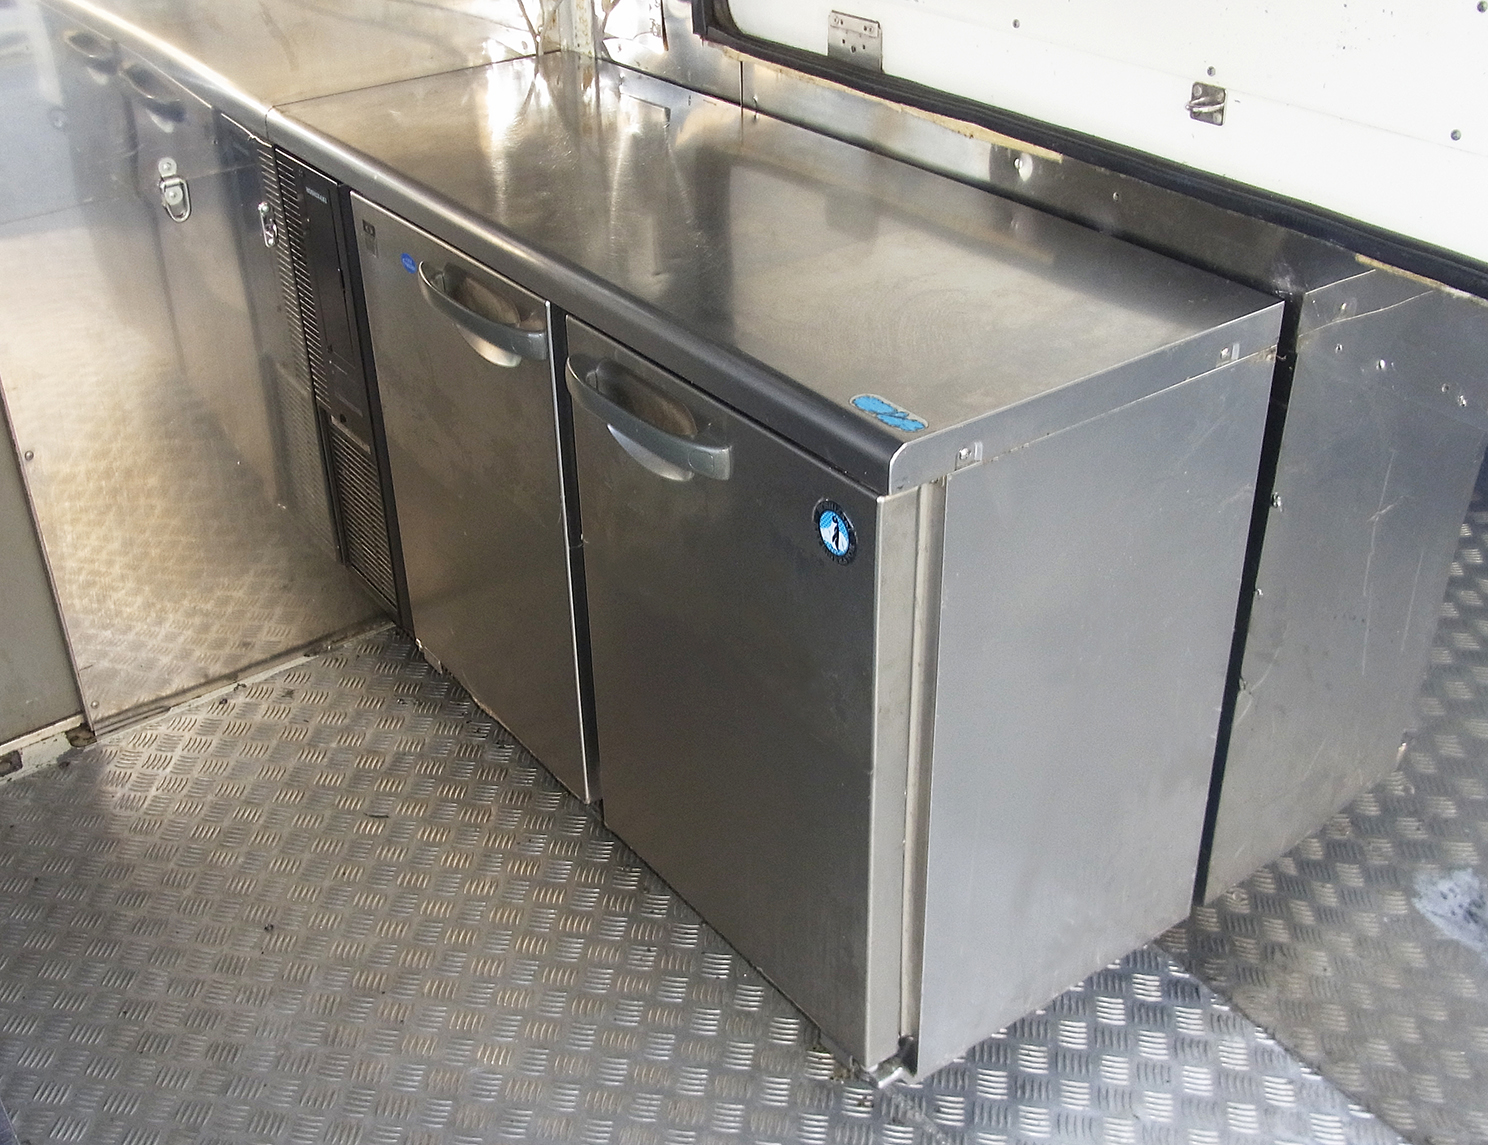 キッチンカーレンタル車輛アーバンサポーターの冷凍冷蔵庫